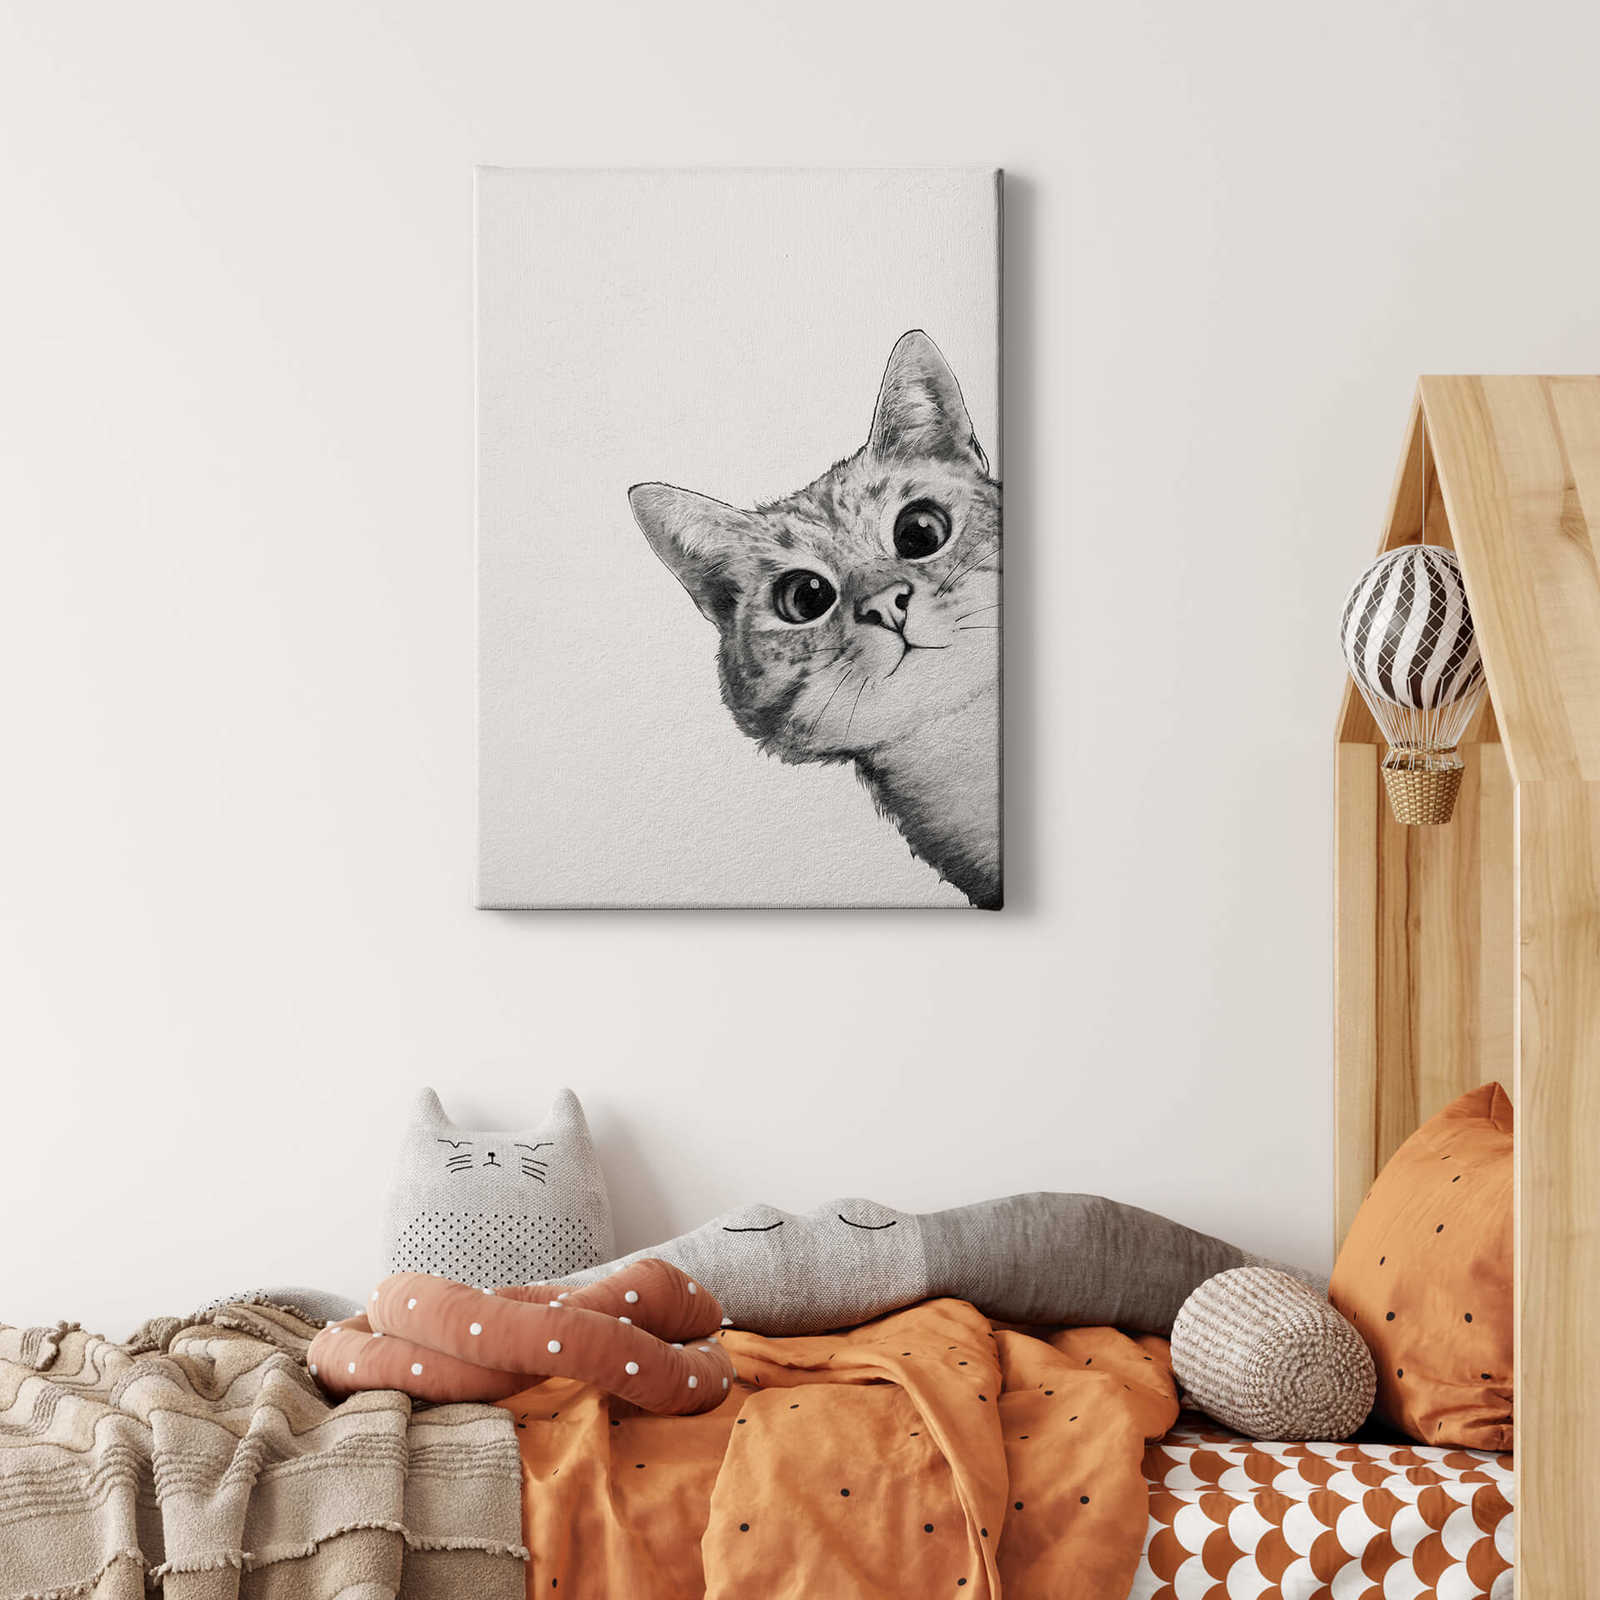             Tableau sur toile "Sneaky Cat" de Graves, chat en noir et blanc - 0,50 m x 0,70 m
        